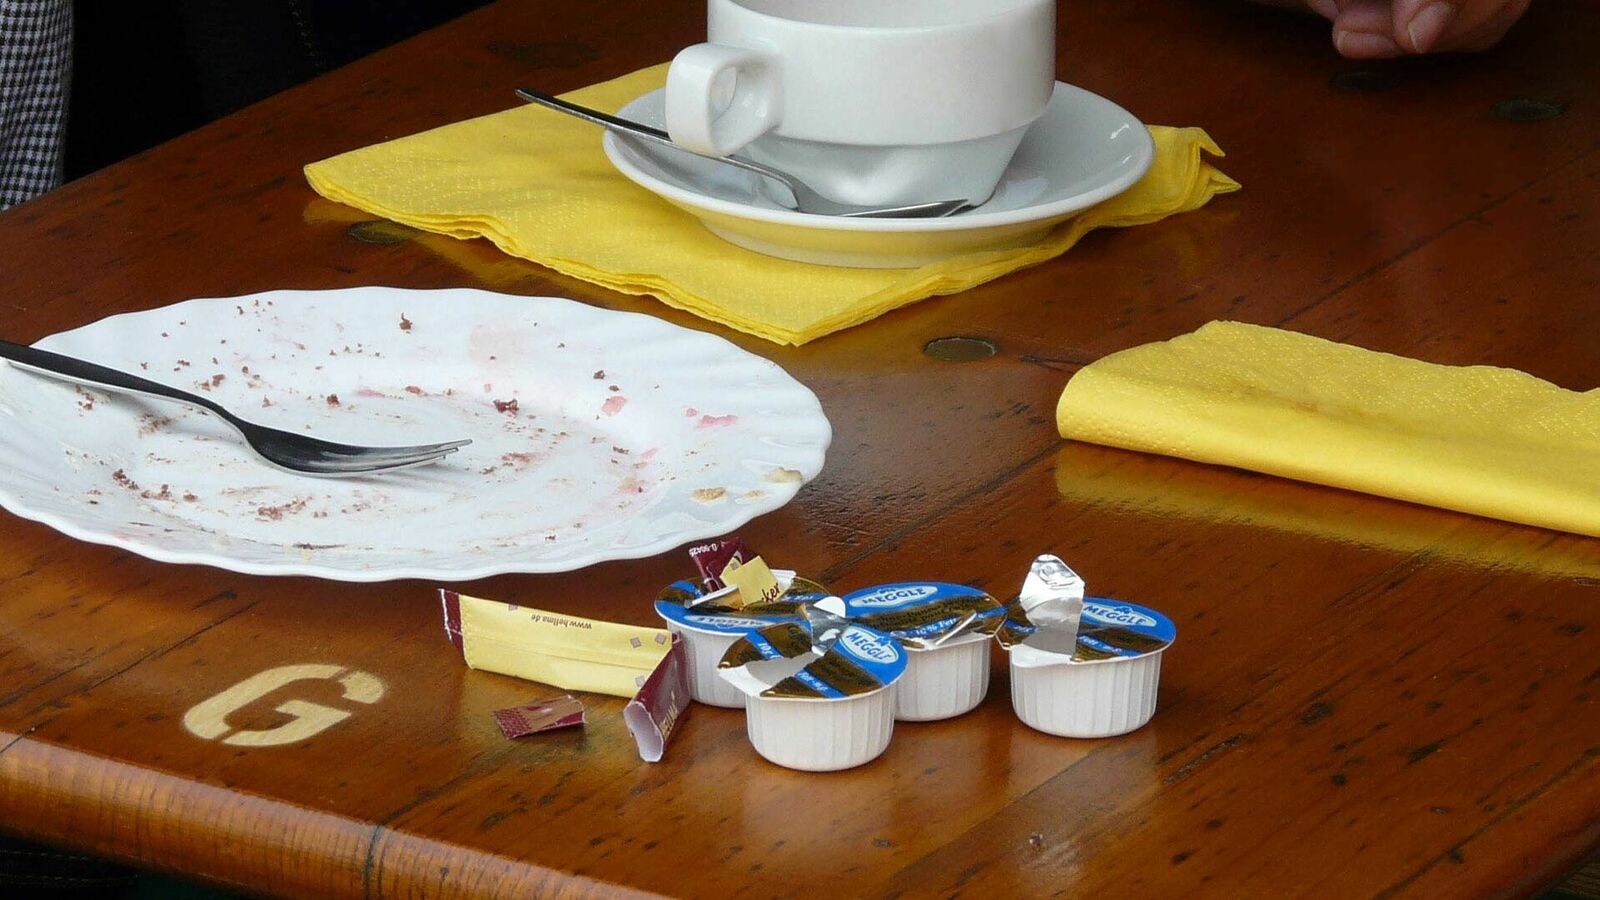 Auf einem Tisch stehen neben einer Kaffeetasse, einem leergegessenen Kuchenteller und zwei gelben Servietten vier geöffnete Mini-Verpackungen mit Kaffeesahne und ein Stick mit Zucker